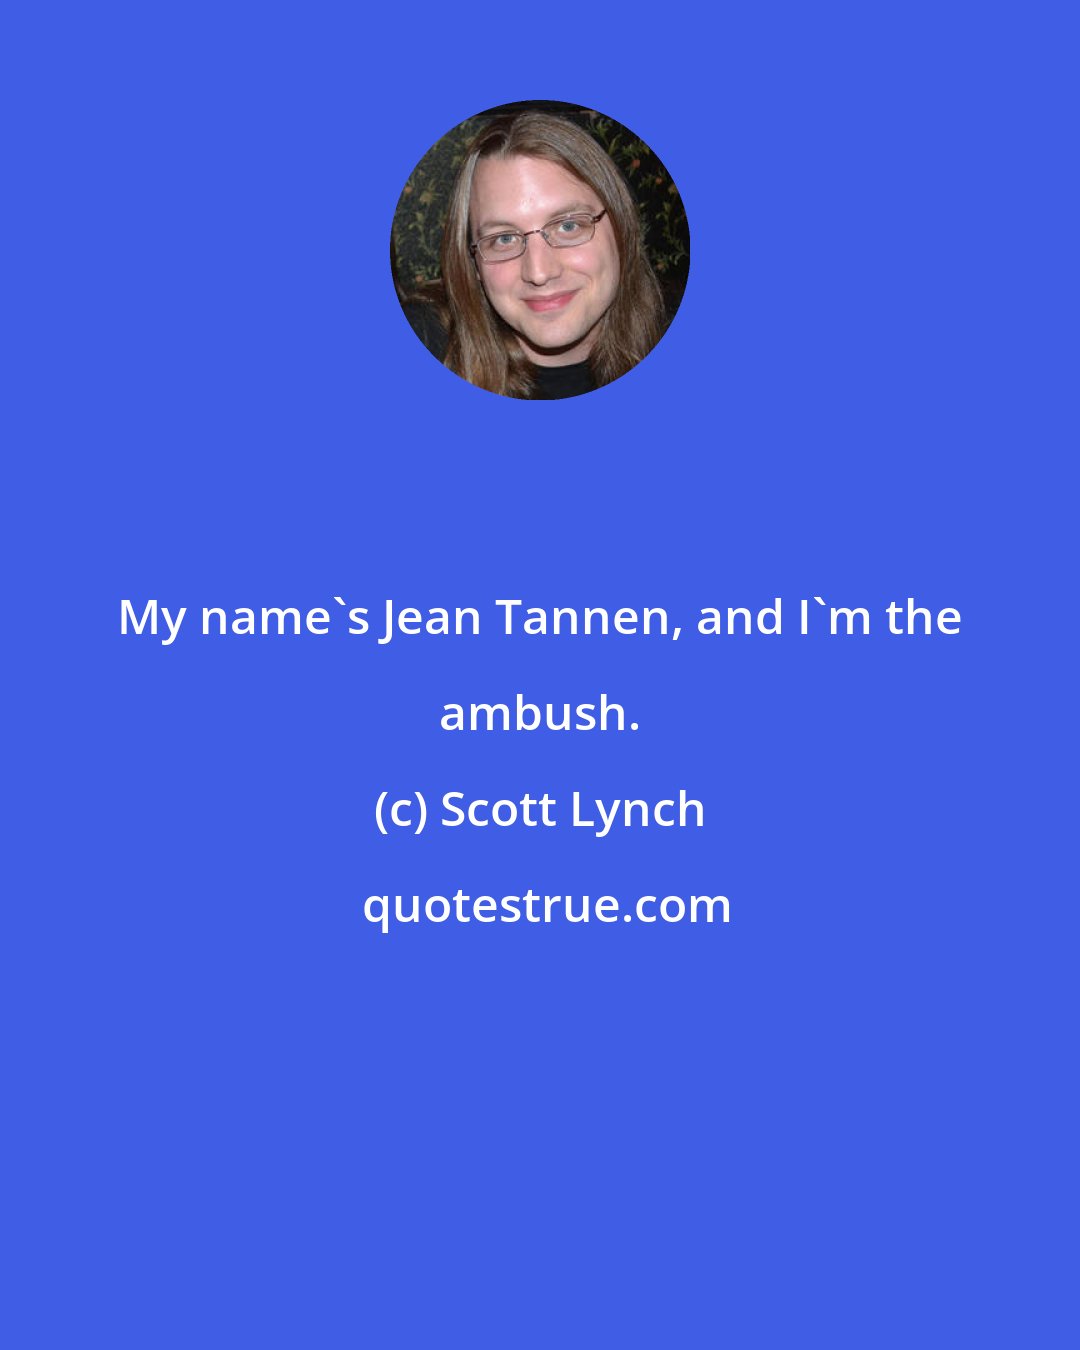 Scott Lynch: My name's Jean Tannen, and I'm the ambush.